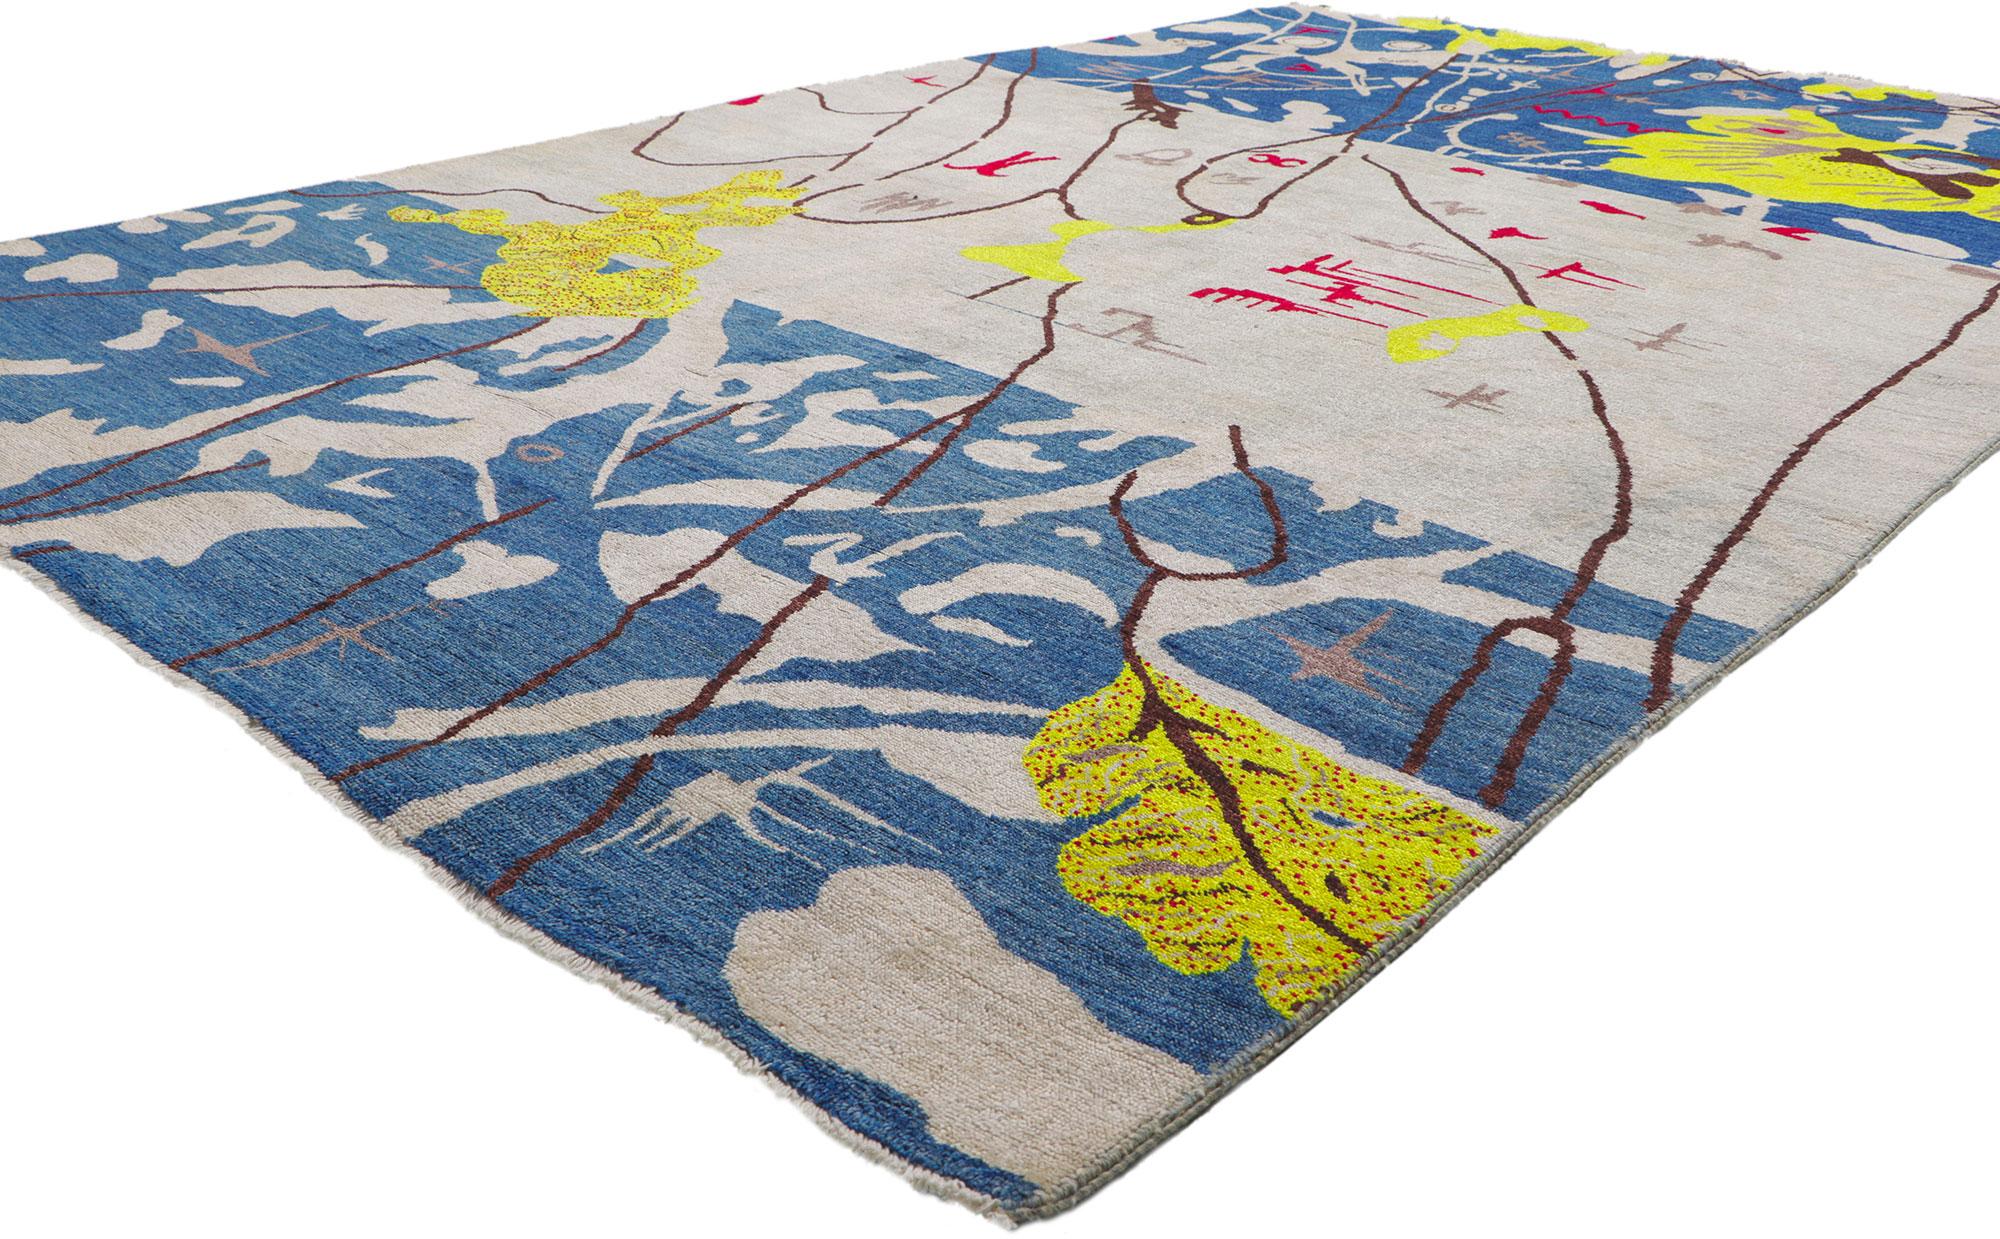 80744 Nouveau tapis contemporain inspiré par Joan Miro, mesures : 06'03 x 09'04.